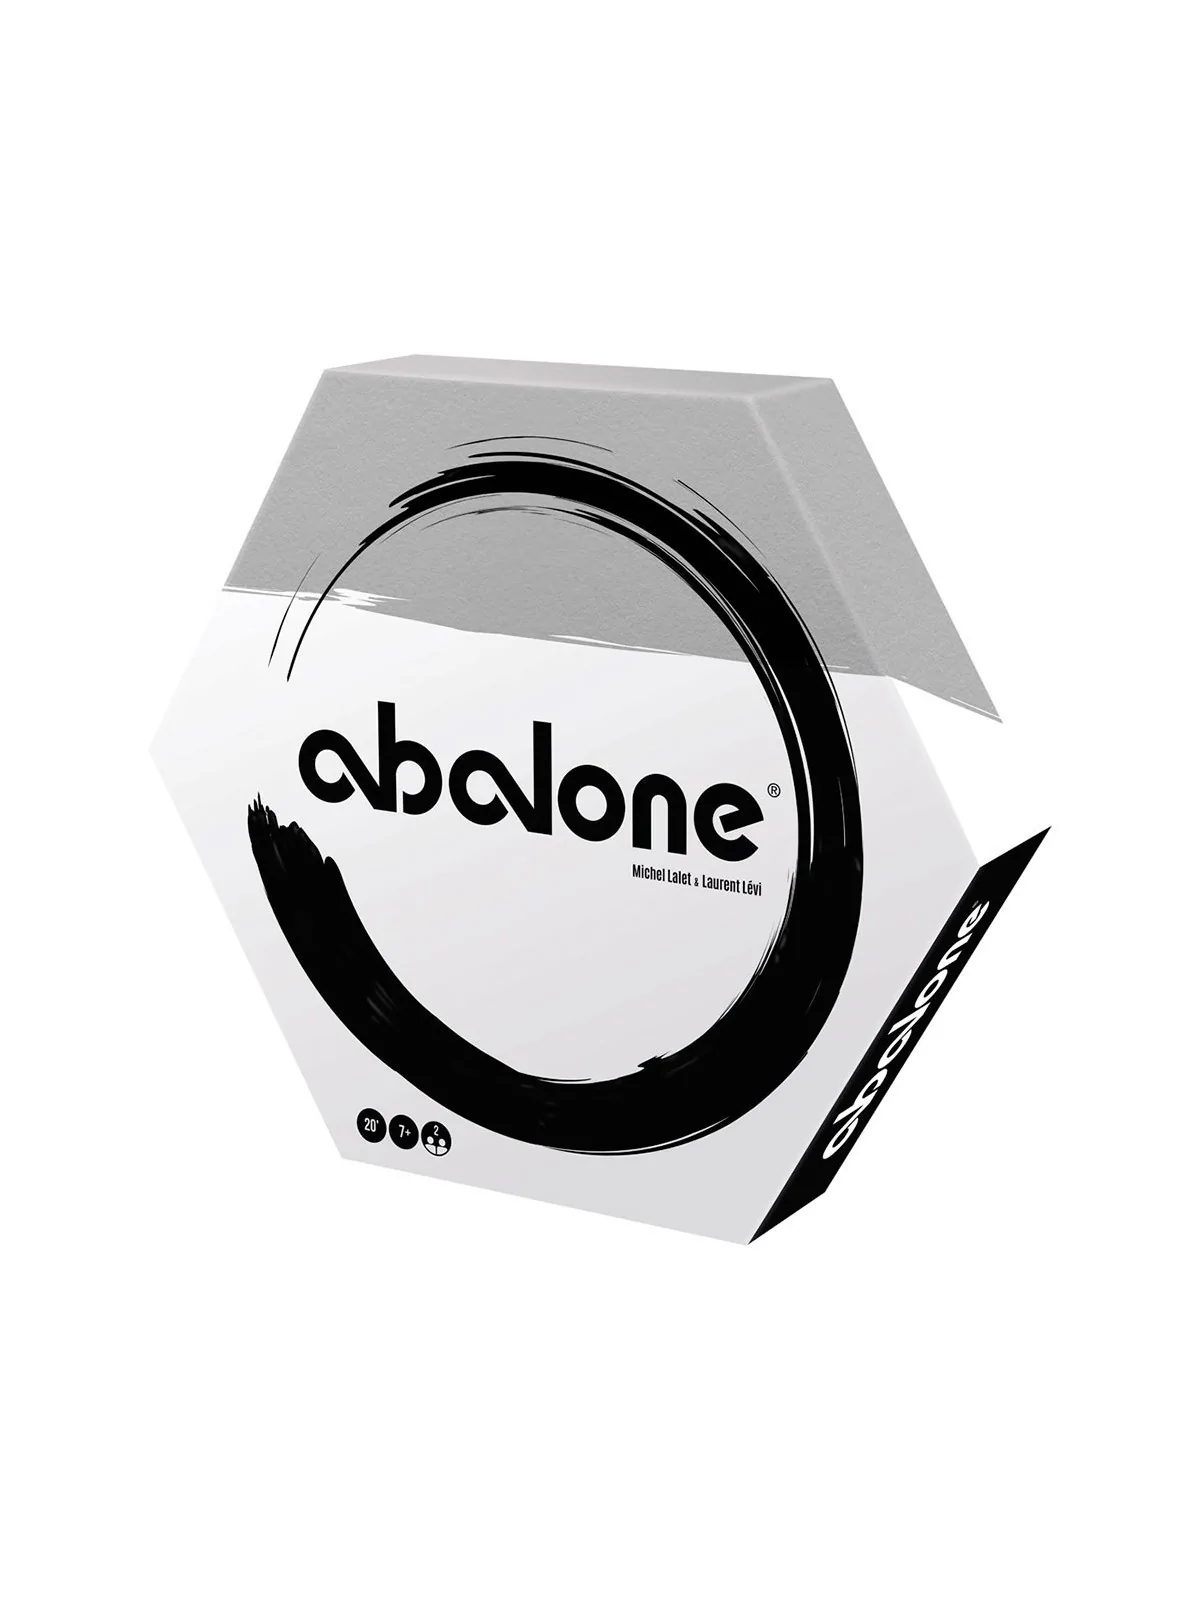 Comprar Abalone barato al mejor precio 29,69 € de Zygomatic